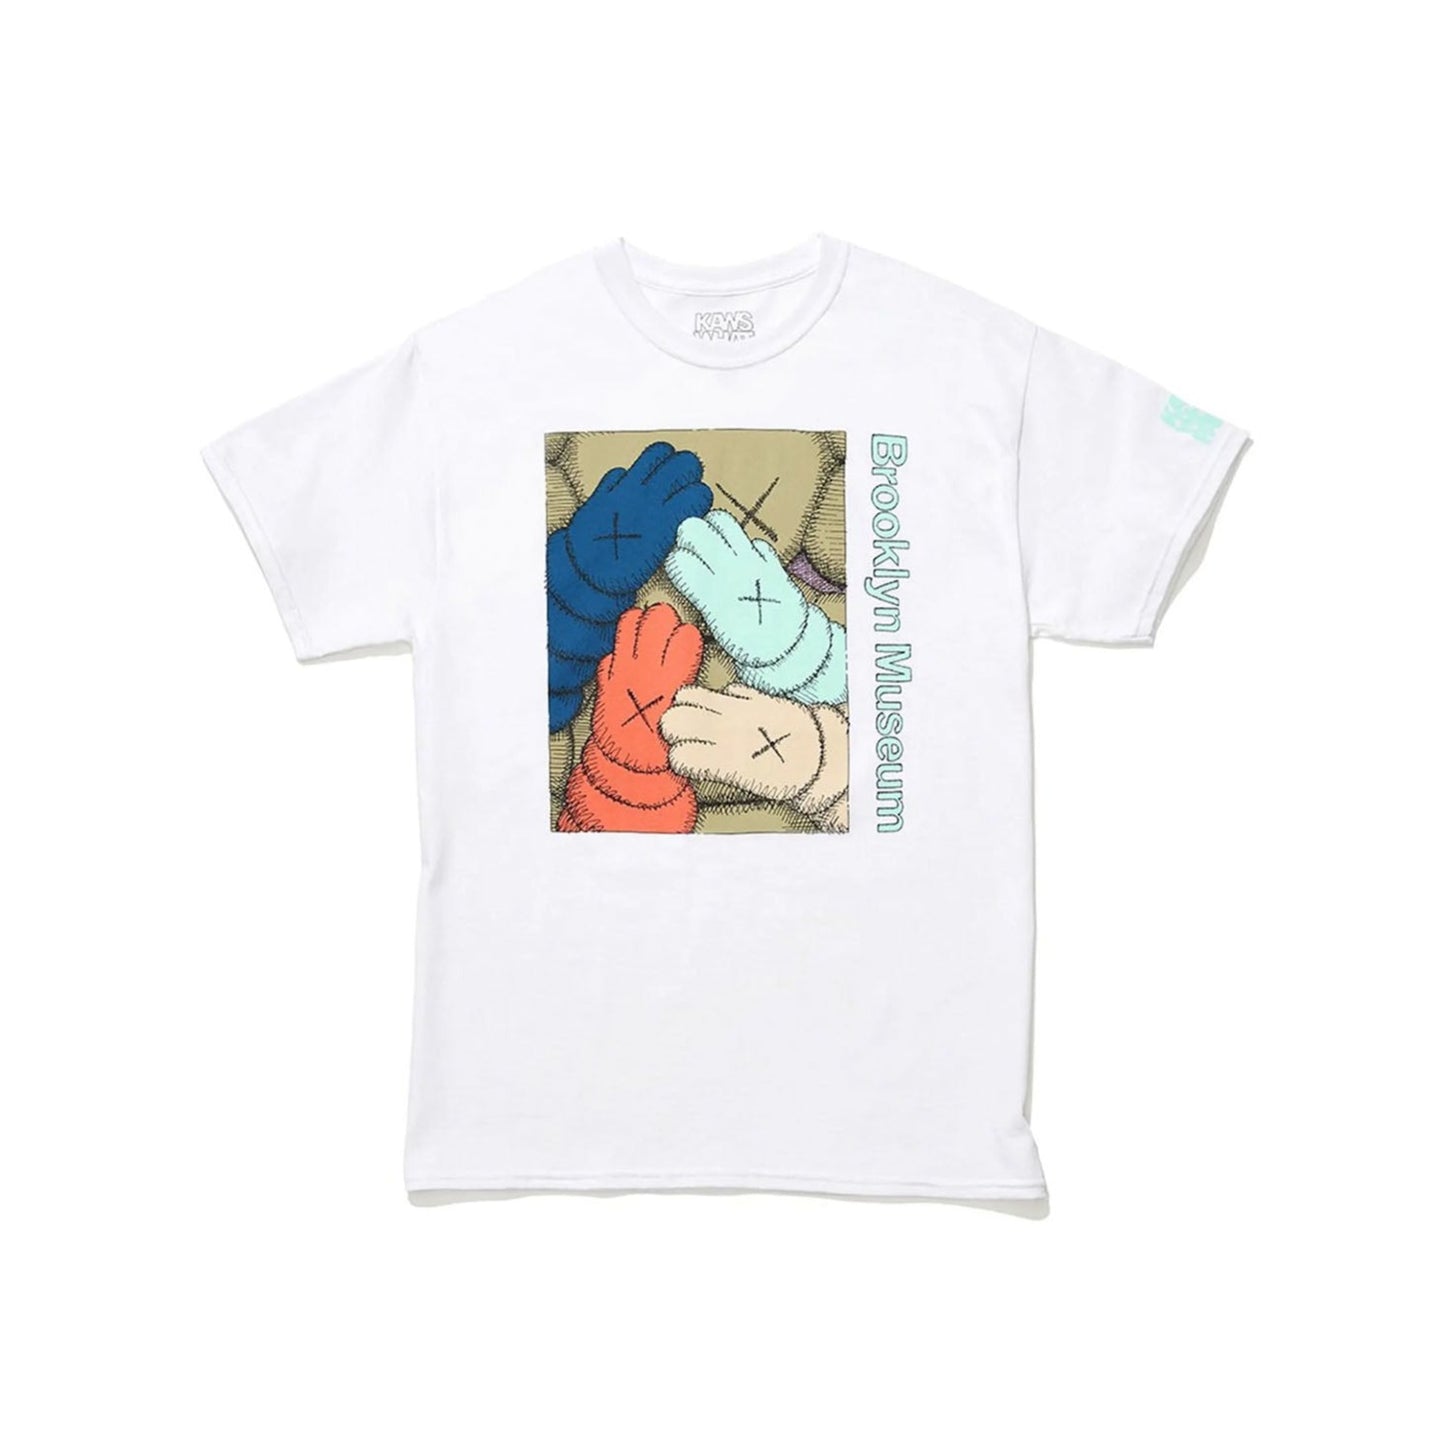 KAWS x Brooklyn Museum "URGE" T-Shirt